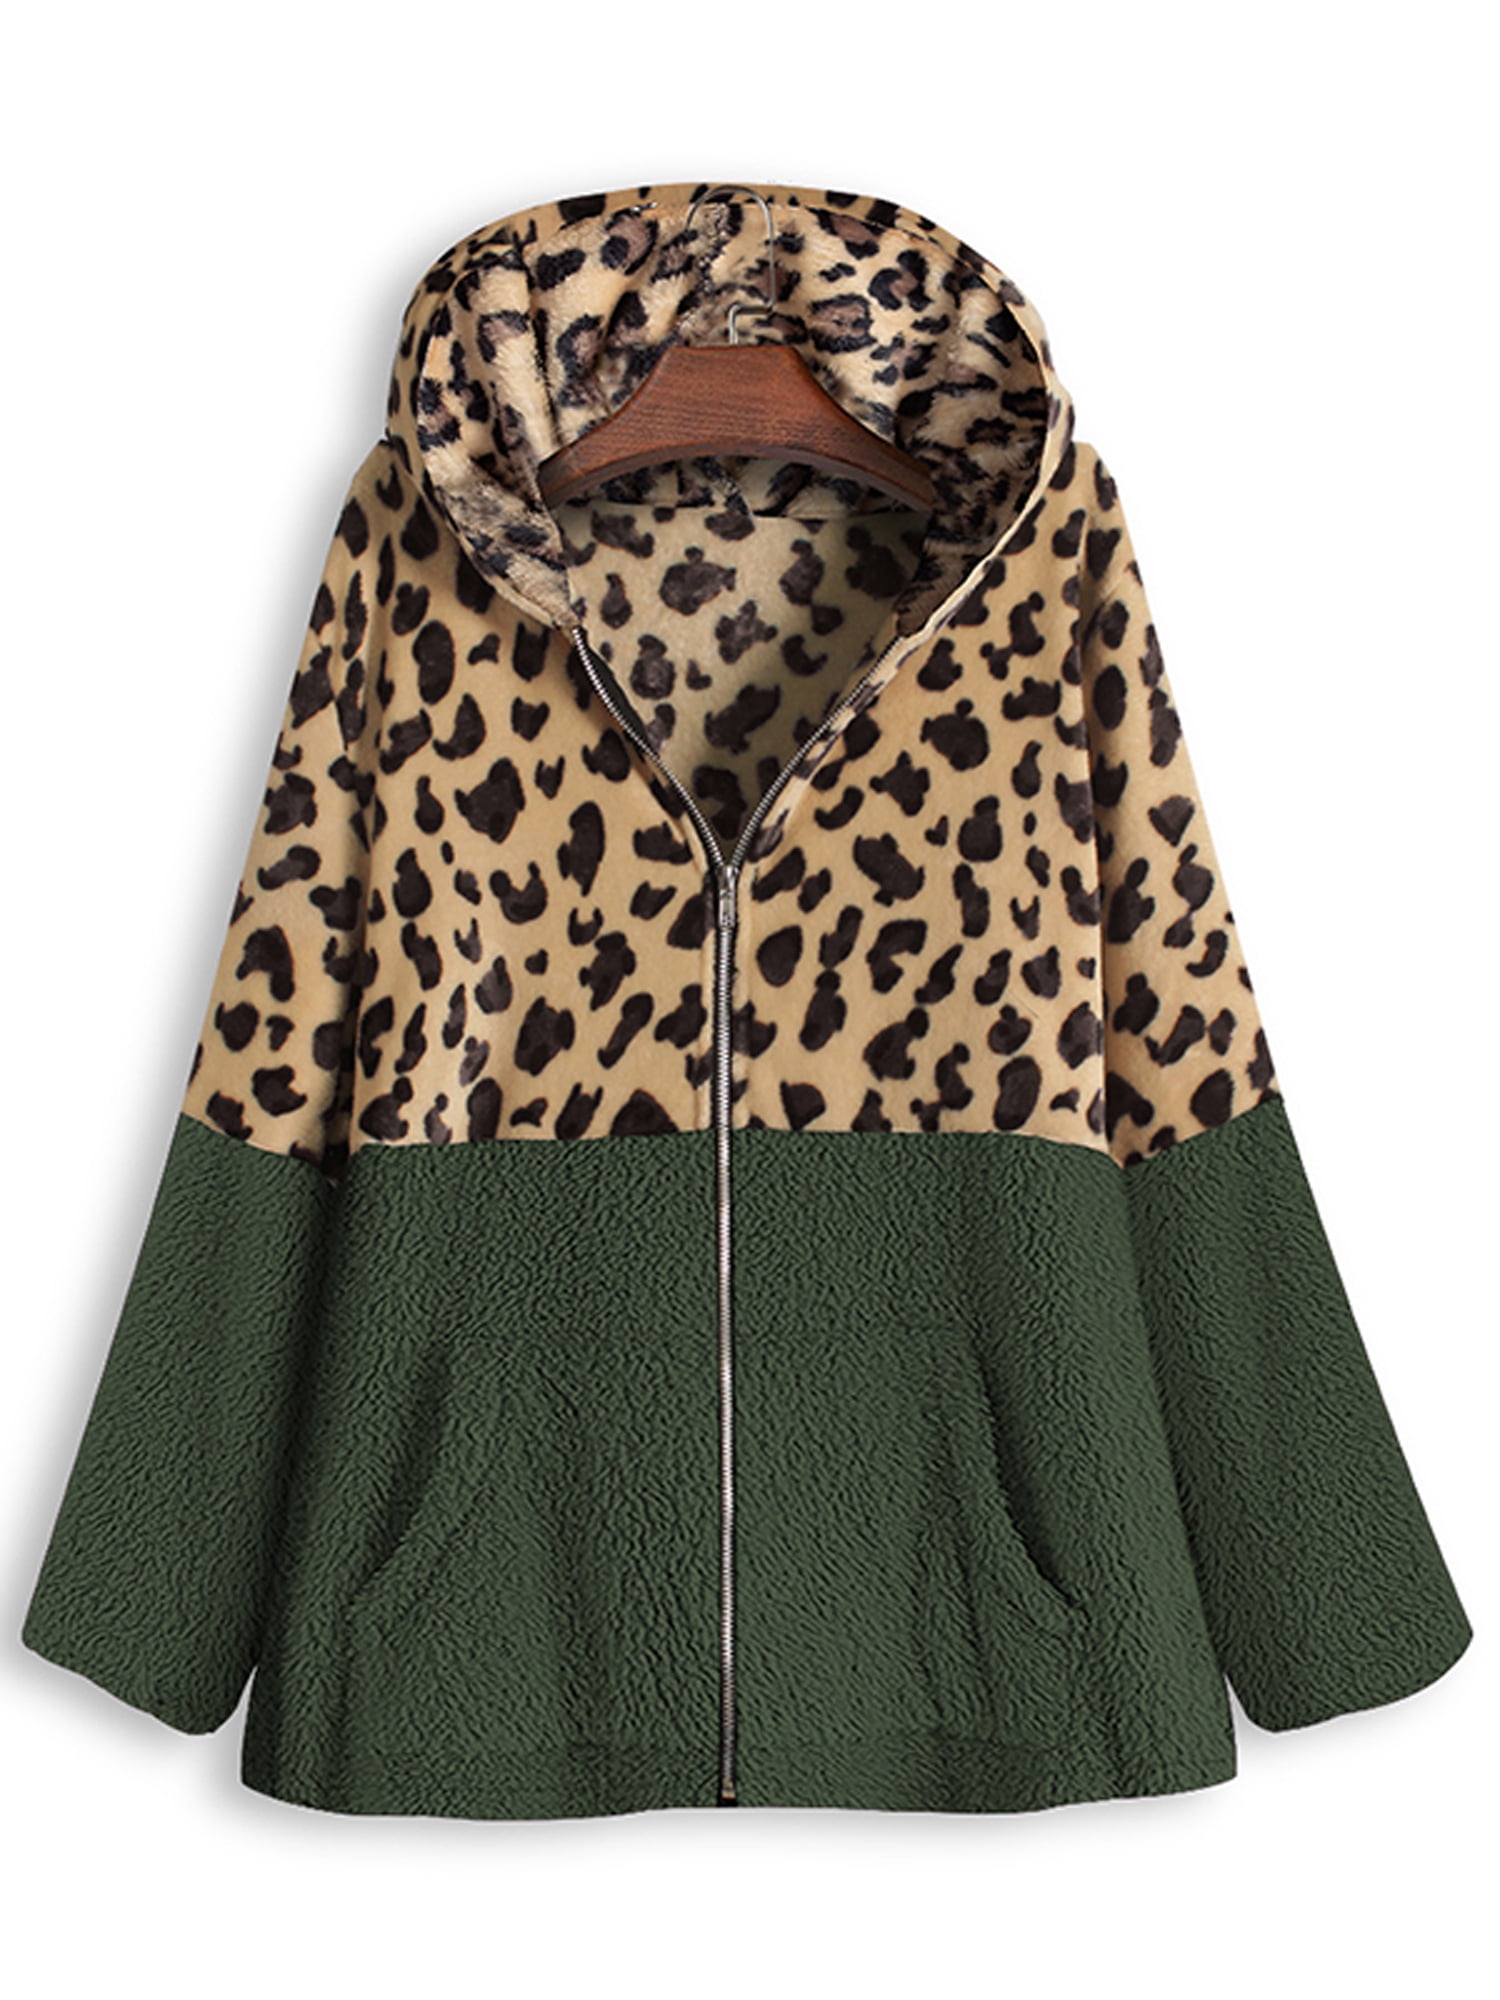 Leopard Coats for Women Plus Size Hooded Hooded Sweatshirt for Women Long Sleeve Plus Size Cardigan Coats Outwear 